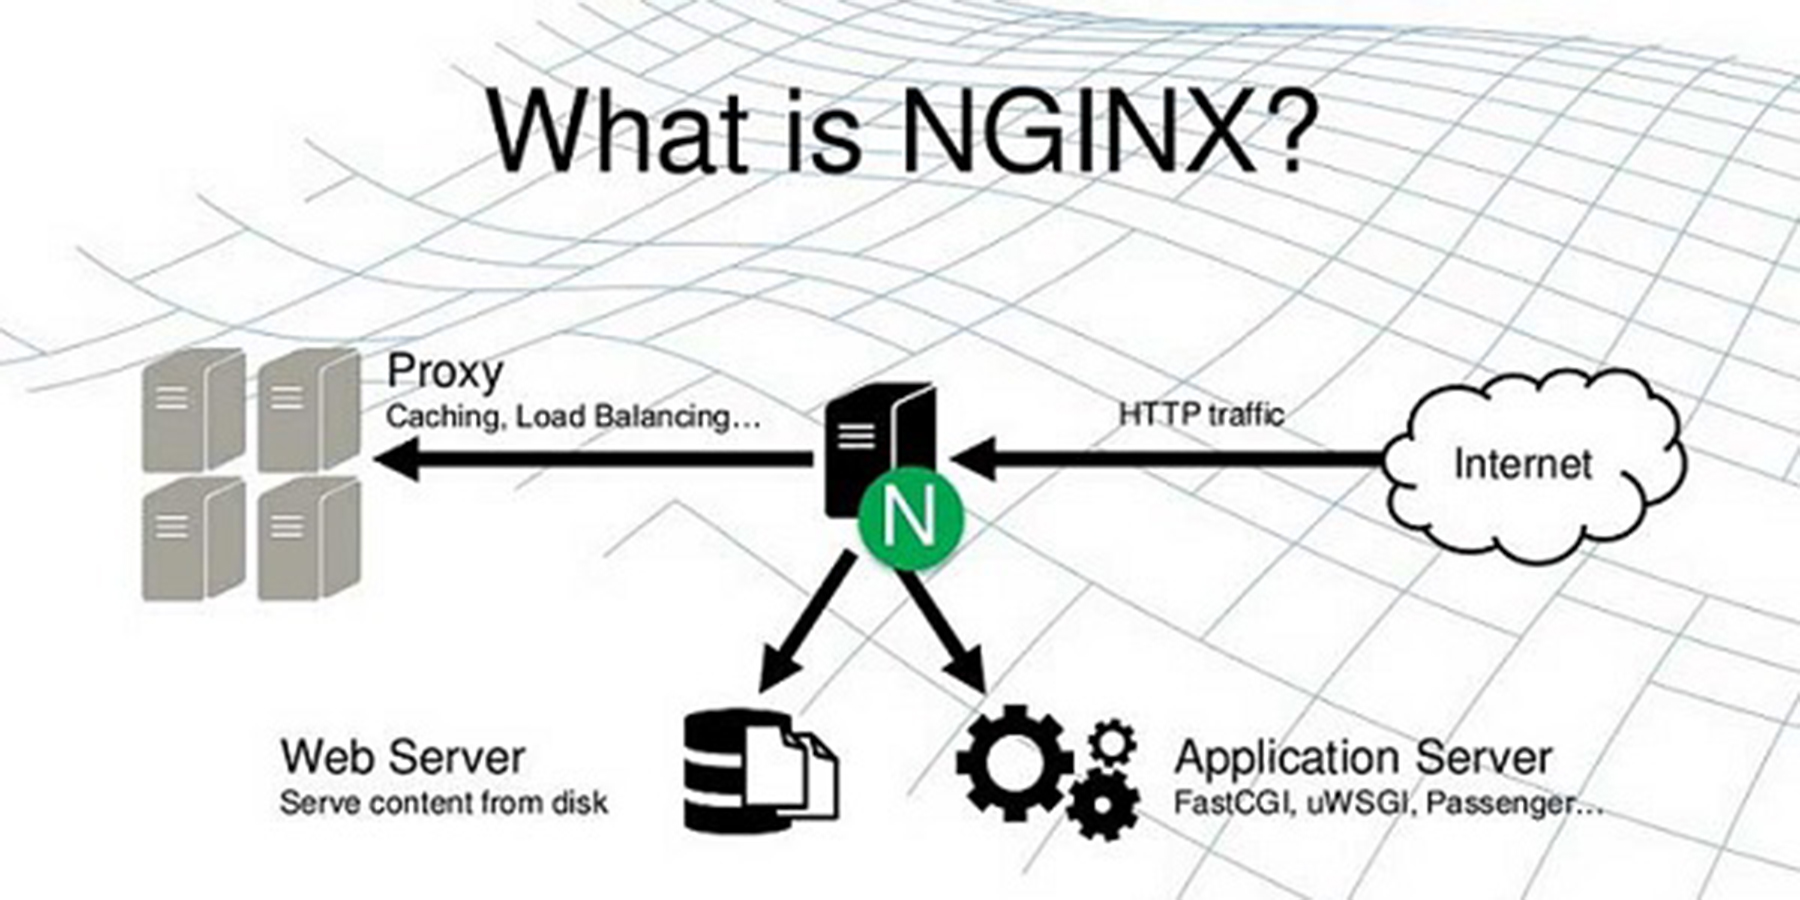 一文搞懂什么是 Nginx